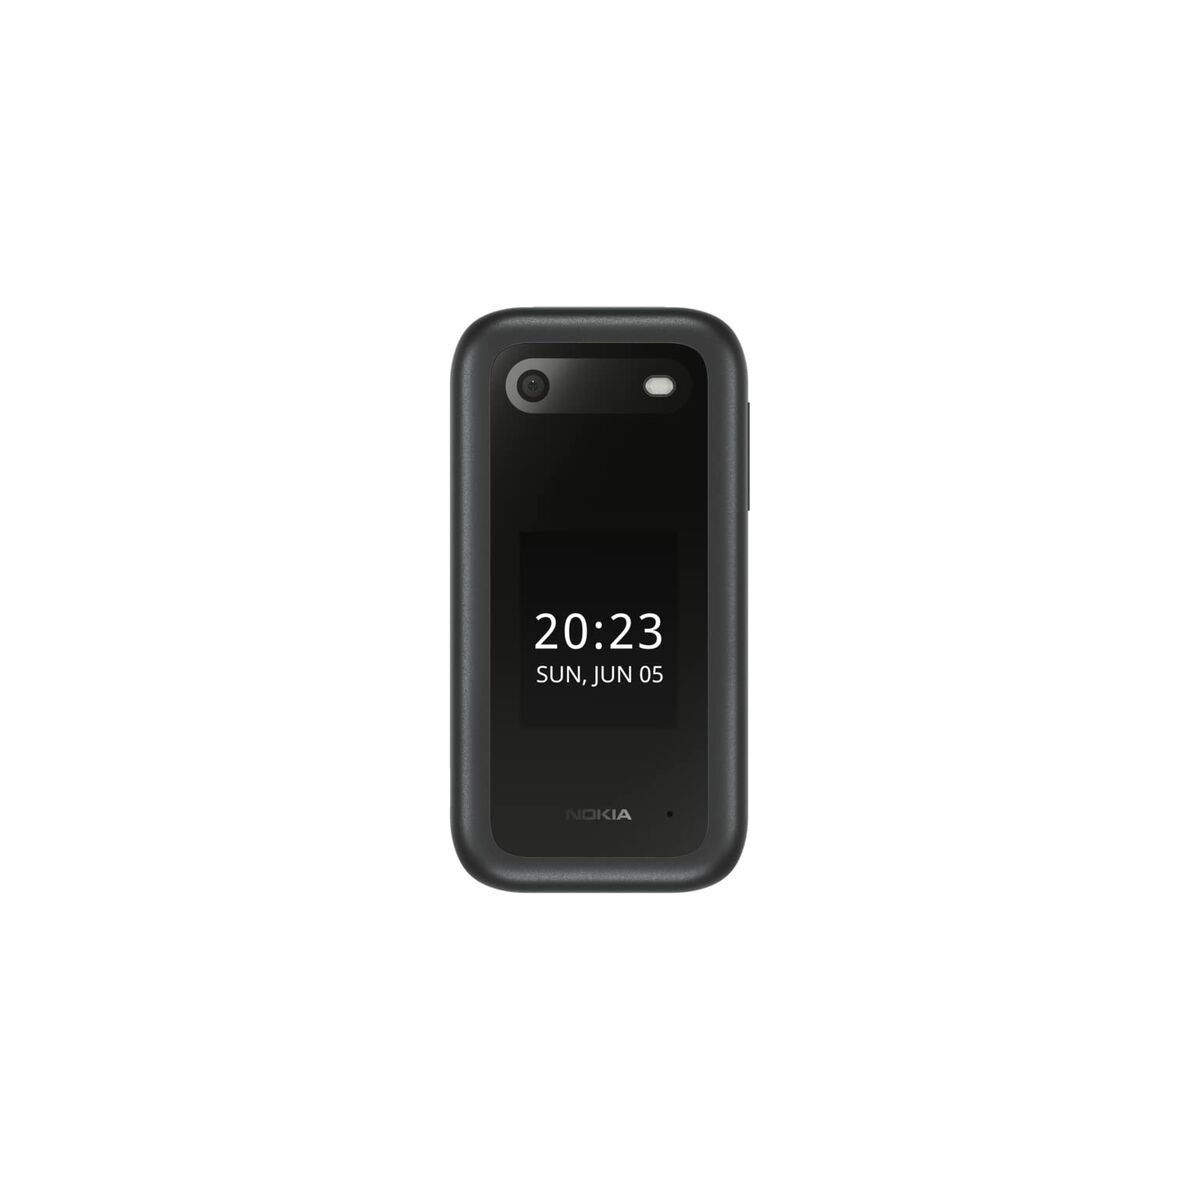 Téléphone Portable Nokia 2660 Noir 4G 2,8" 128 MB RAM